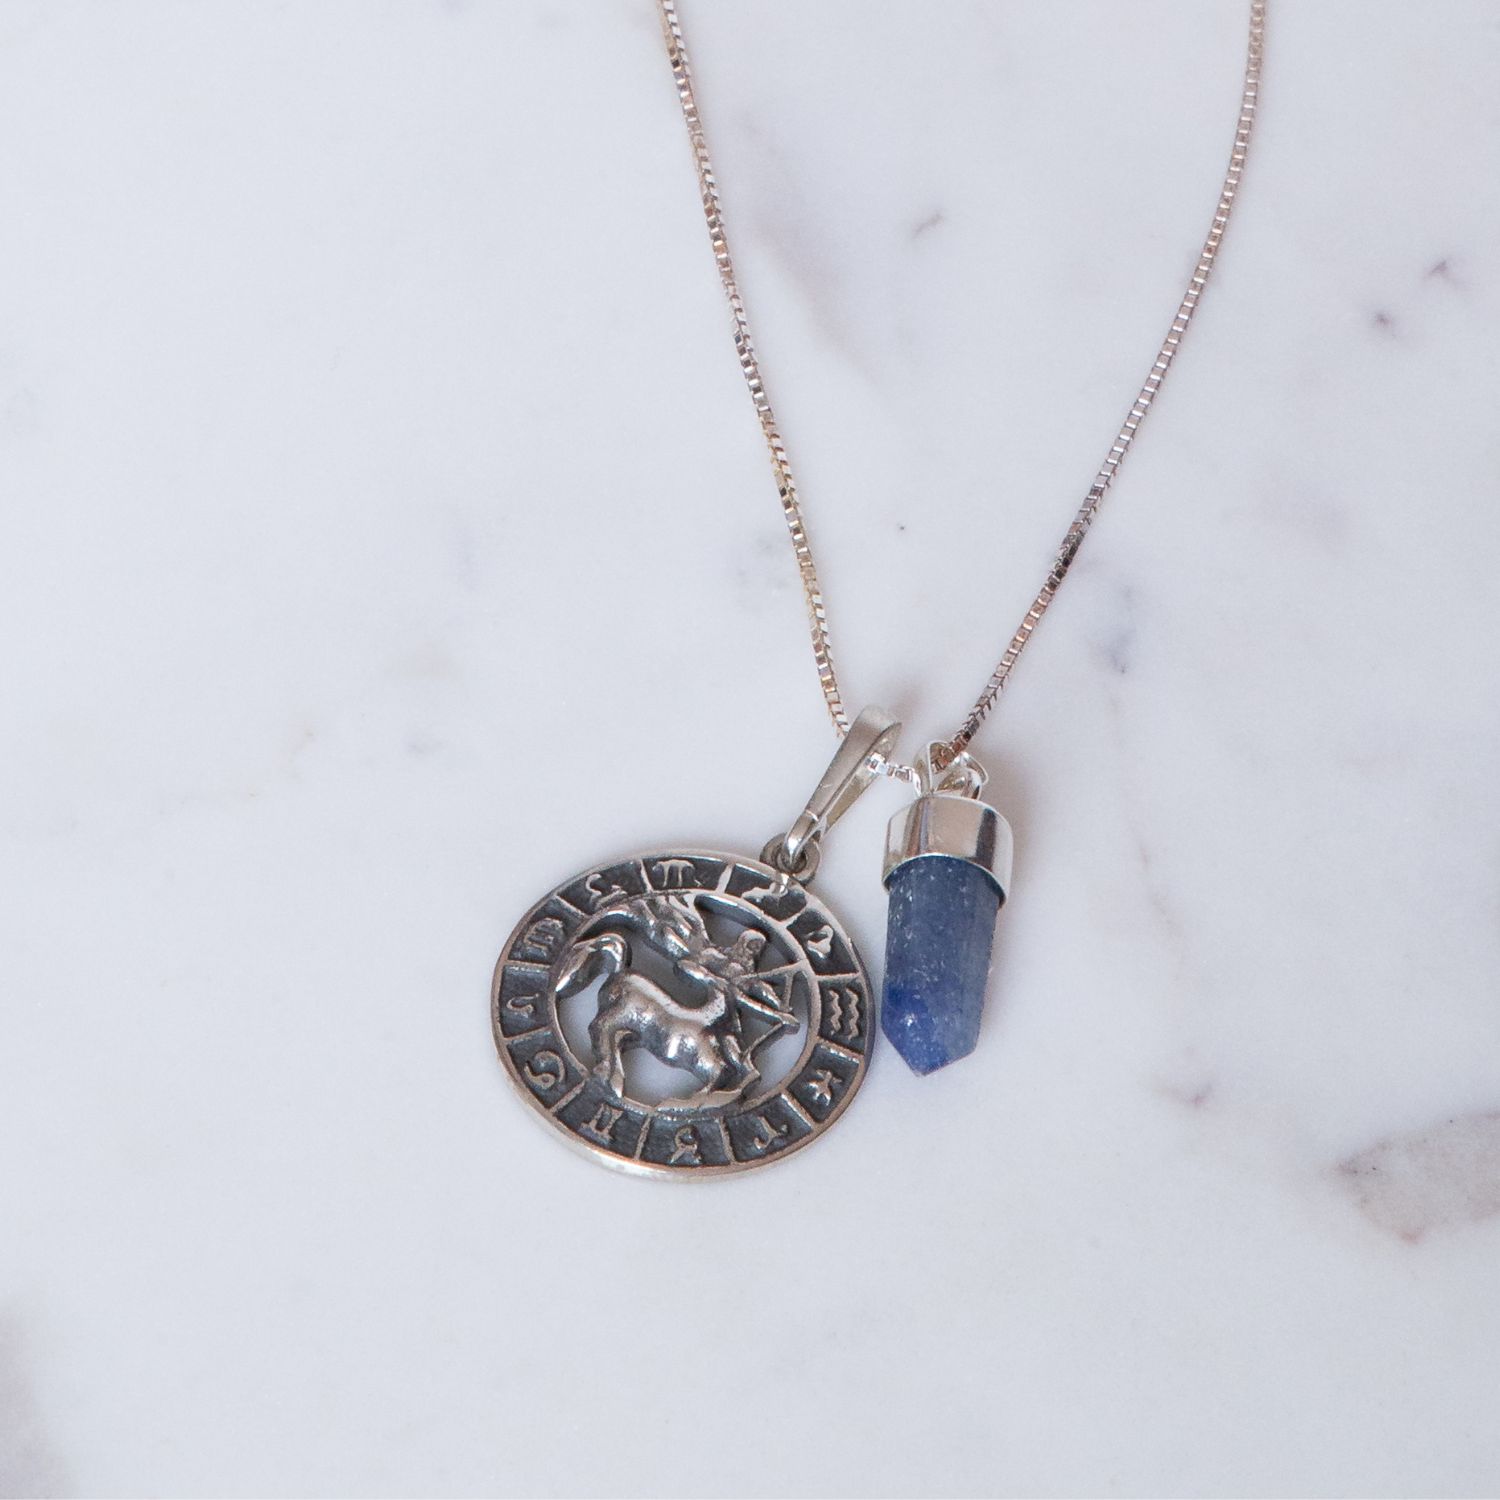 Kit do signo de Sagitário: colar com pingente de quartzo azul + medalhinha